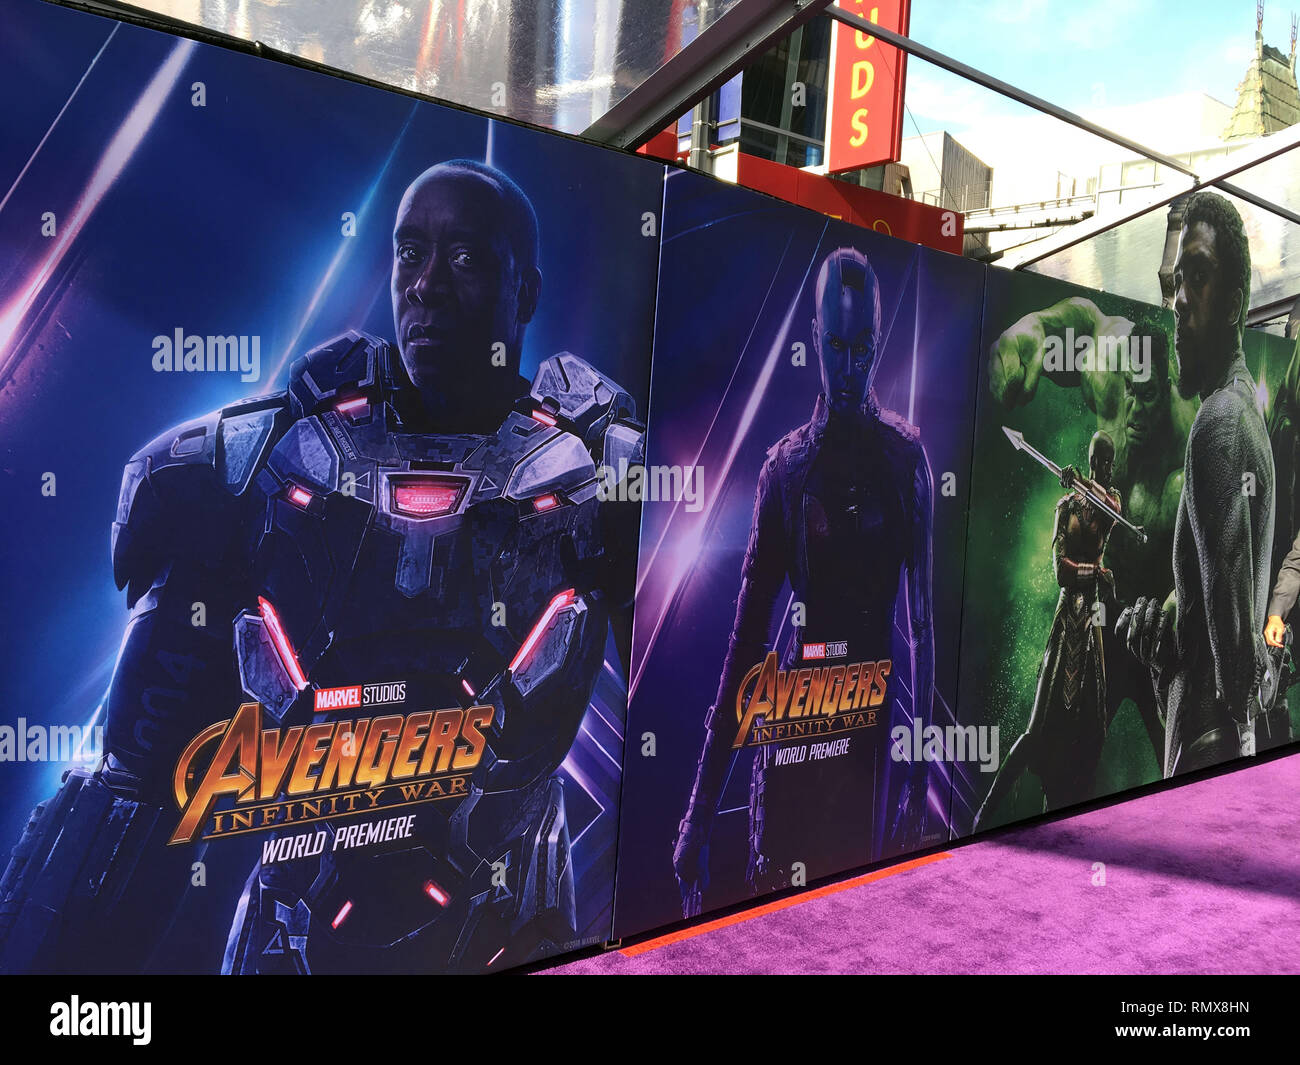 Borradura Sierra Infidelidad Avengers-Infinity War-Costumes y prop de la película 126 en el estreno de  Disney y Marvel 'Vengadores: Infinity War' el 23 de abril de 2018, en Los  Angeles, California.Avengers-Infinity War-Costumes y prop de